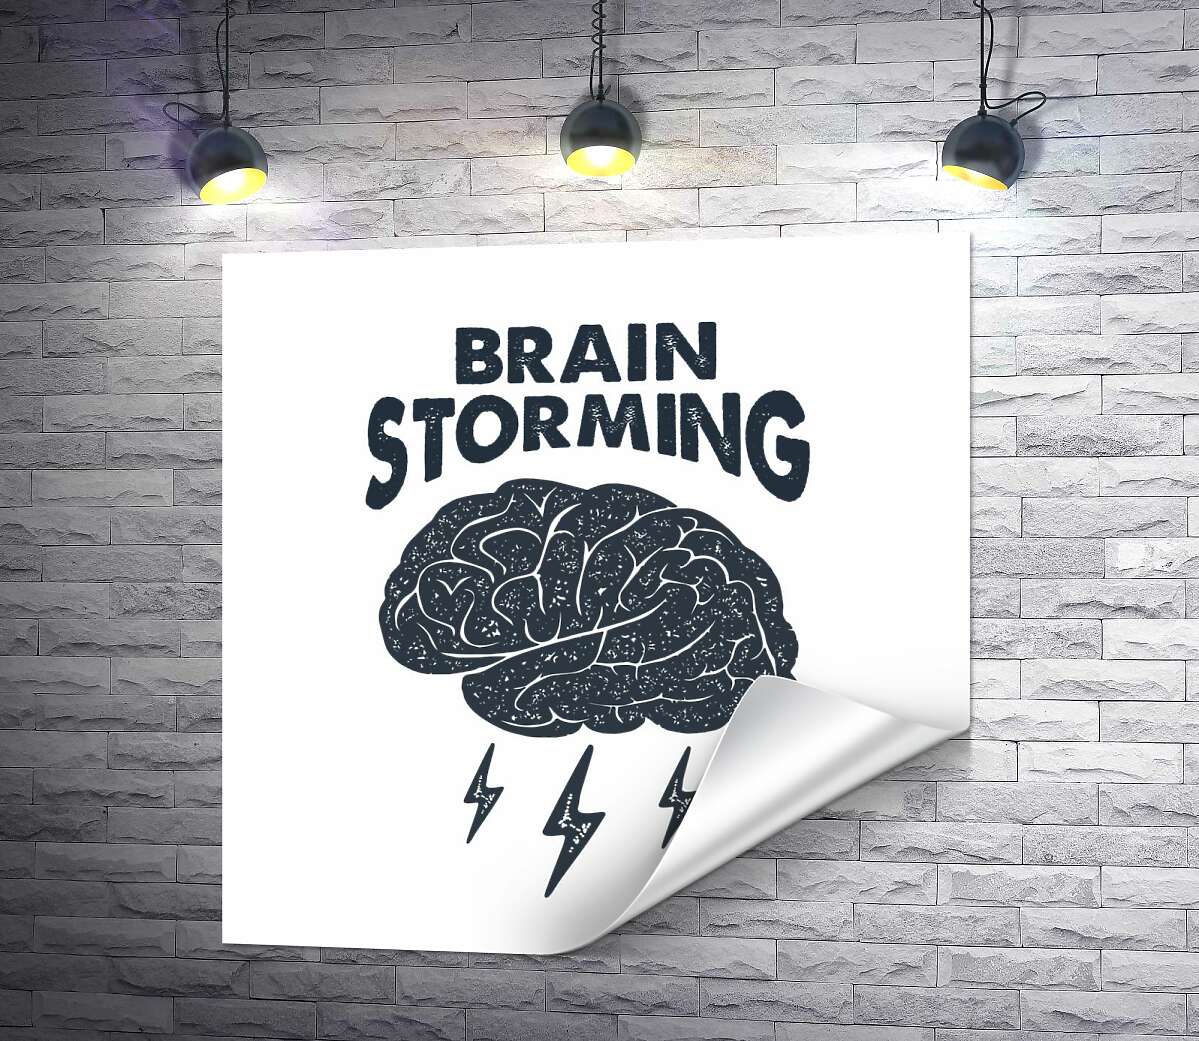 друк Мозок видає блискавичні ідеї поряд з фразою "brain storming"